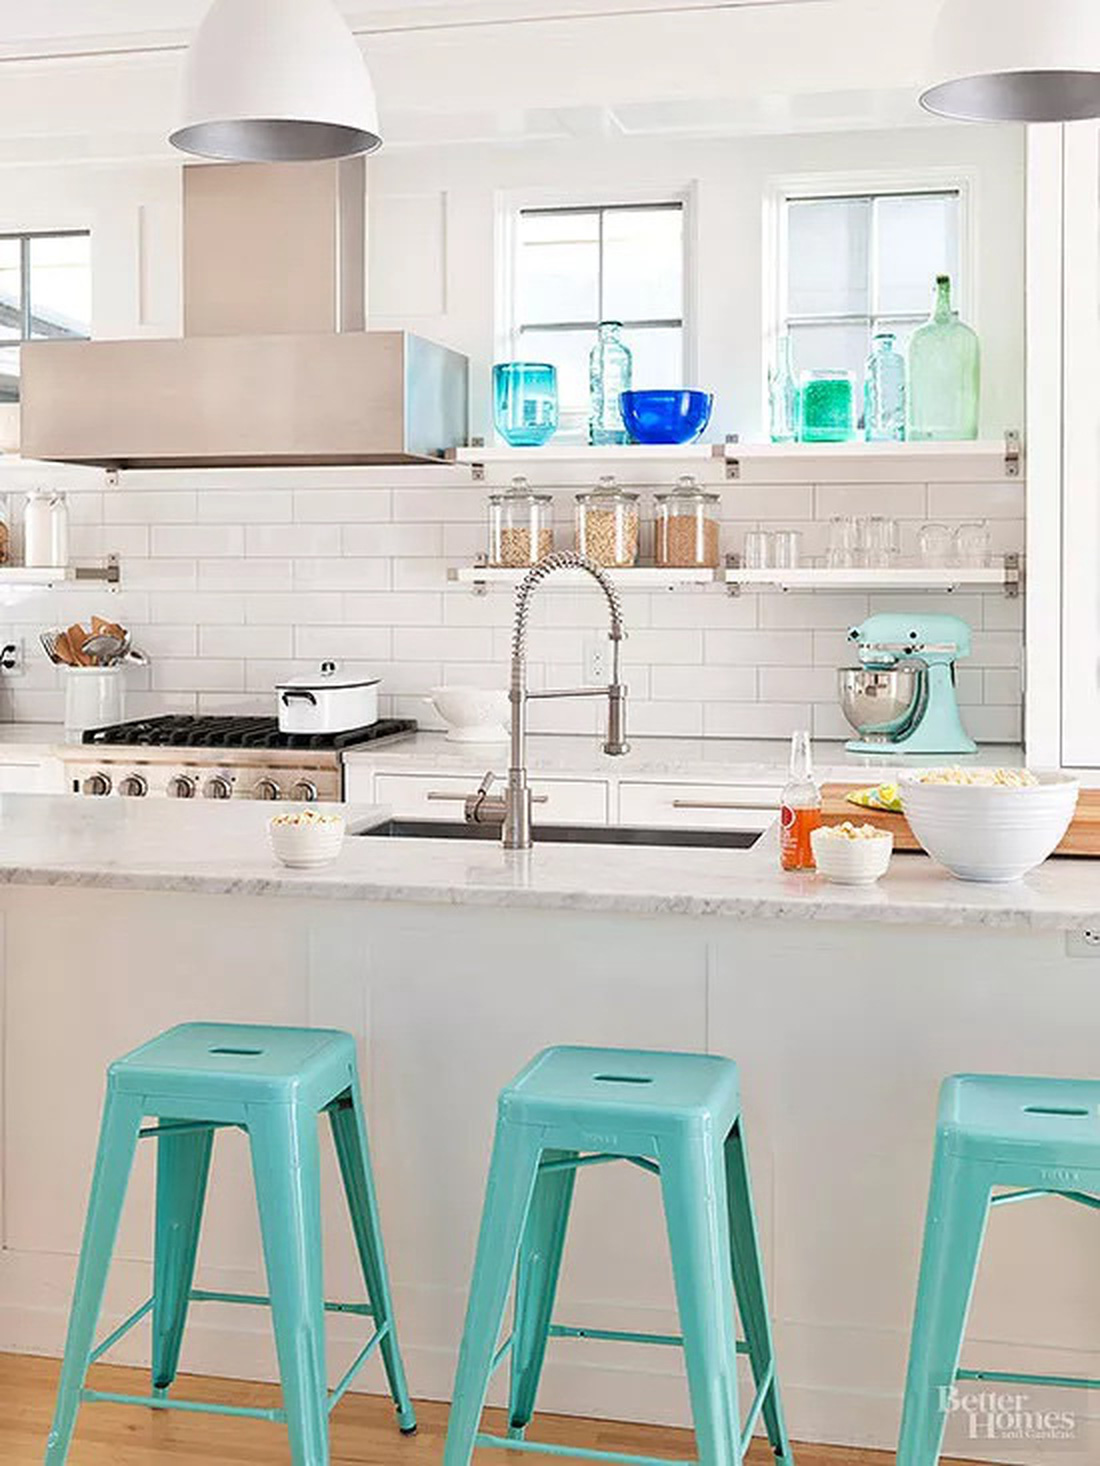 Màu xanh ngọc sáng của những chiếc ghế và máy đánh trứng cũng mang đến cảm giác tươi mới cho căn bếp - Ảnh: BHG